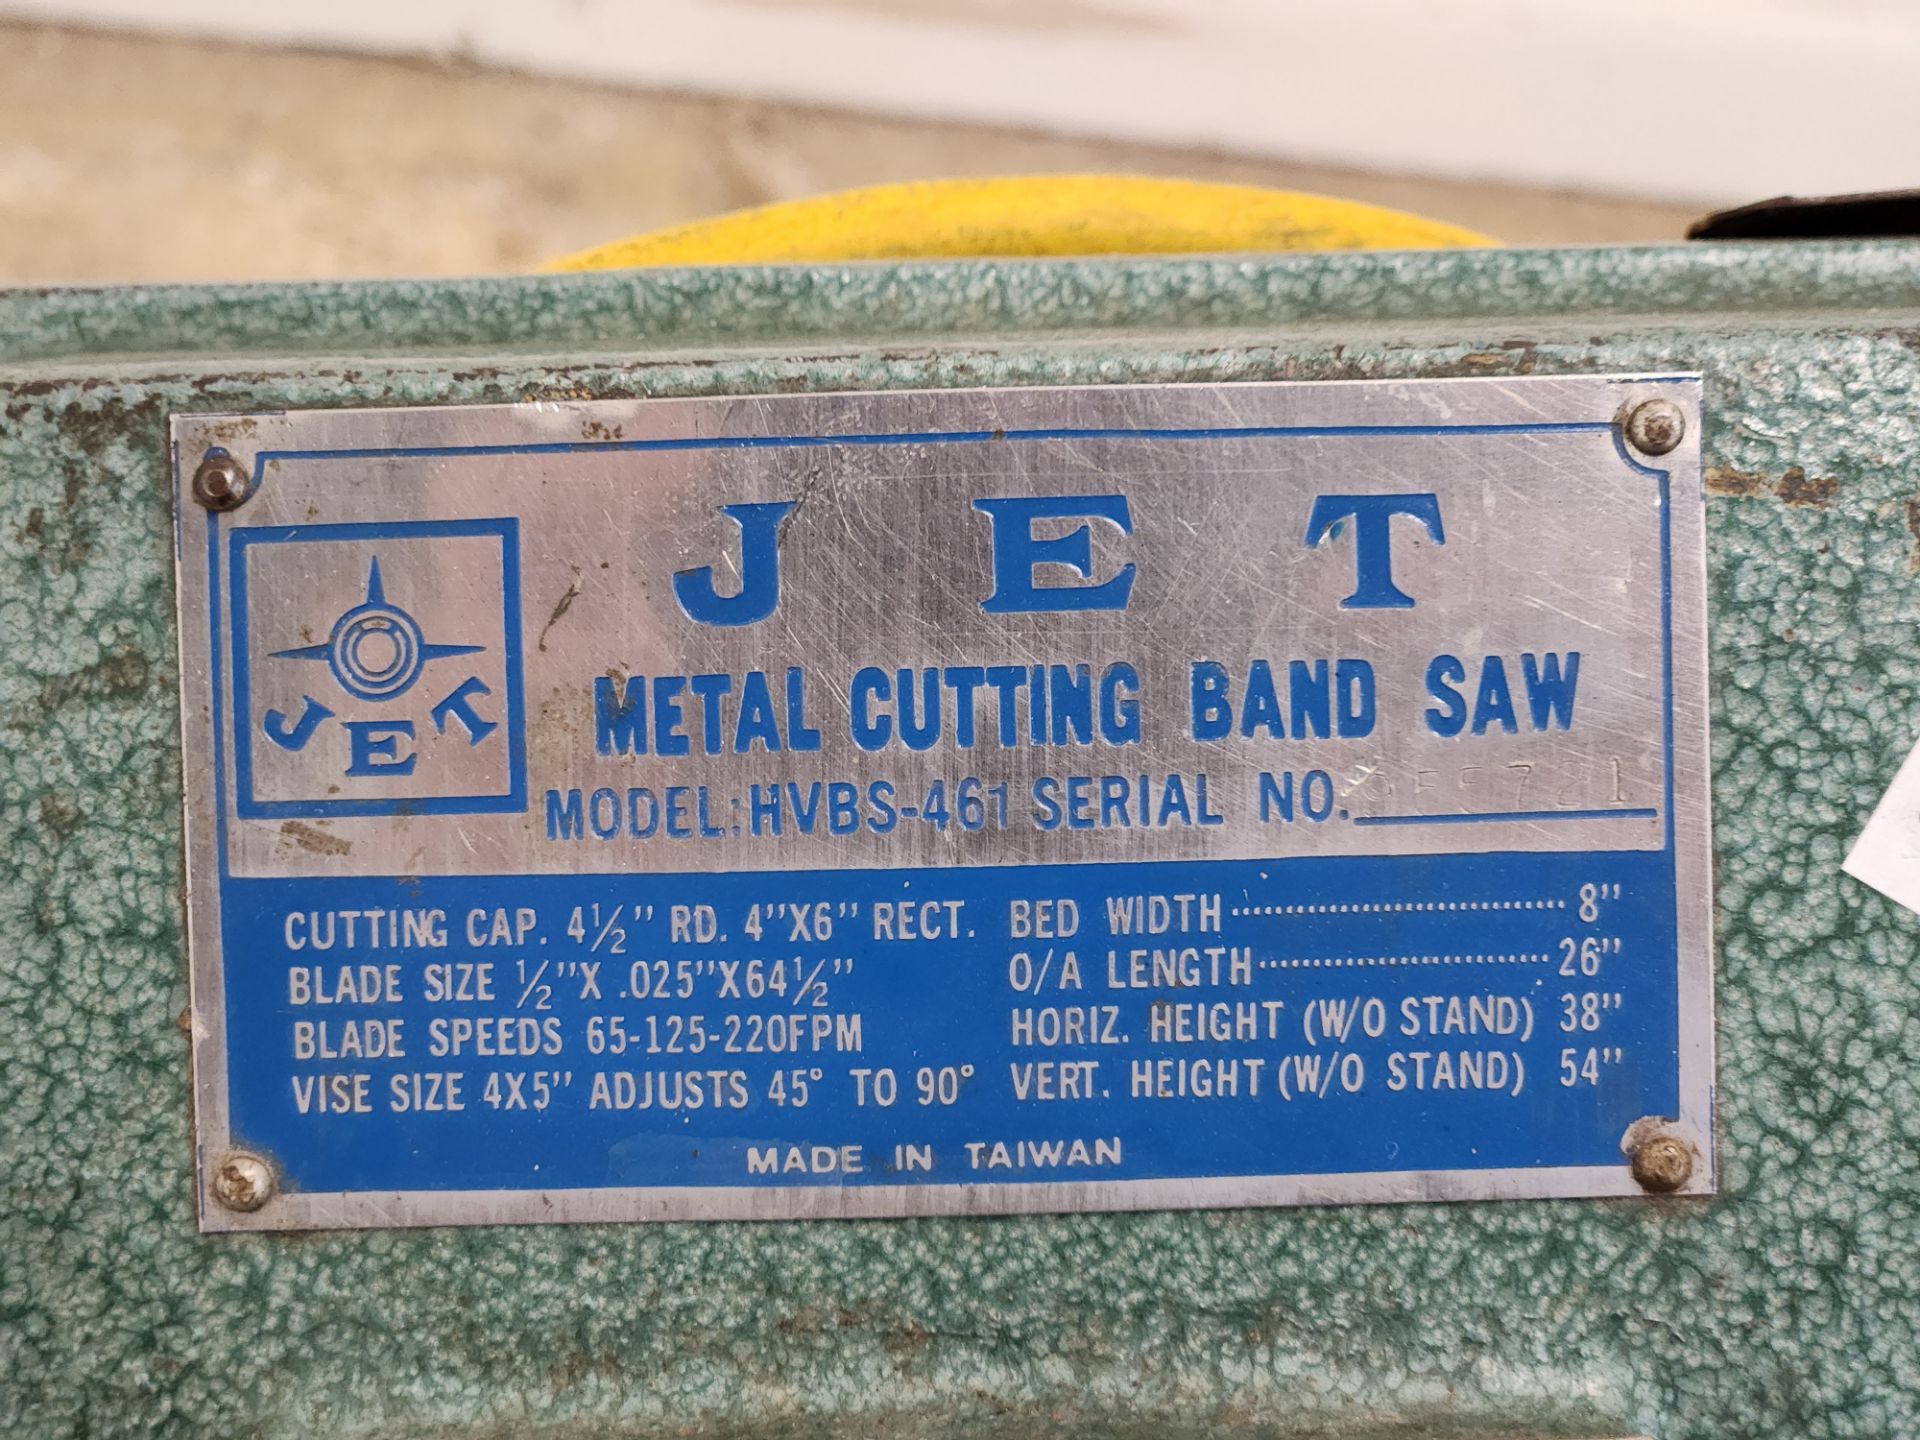 Jet Horizontal Metal Cutting Band Saw - Image 3 of 4